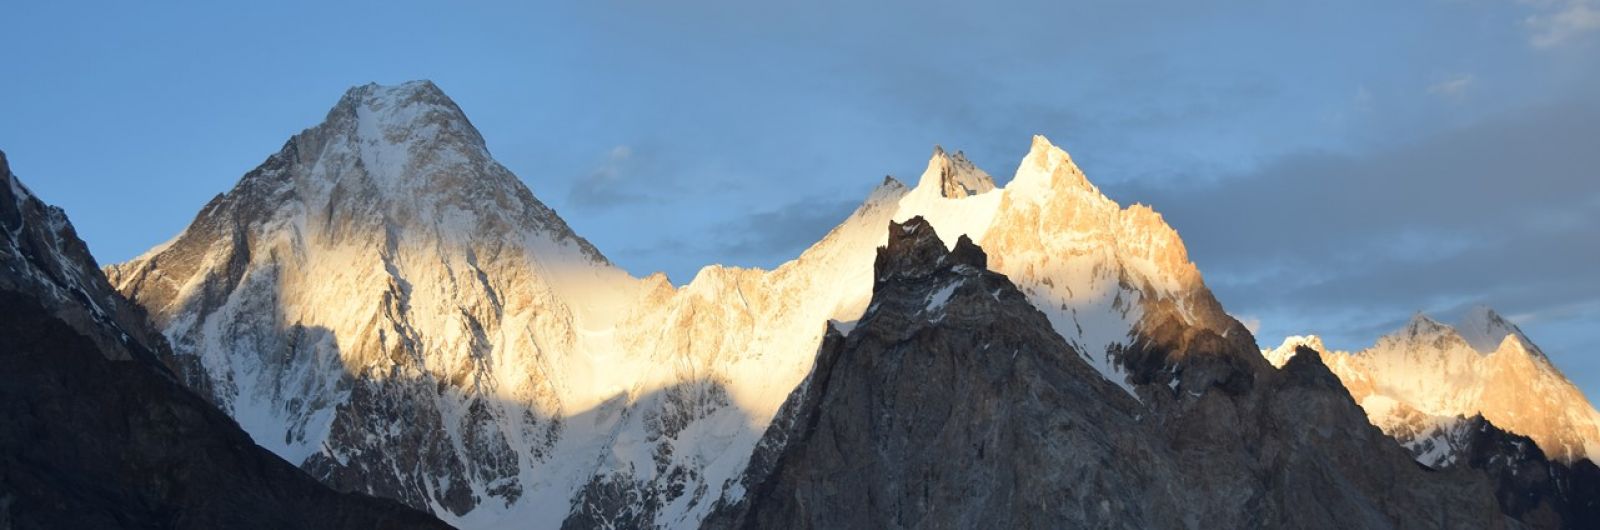 Escenas del Himalaya y del Karakorum